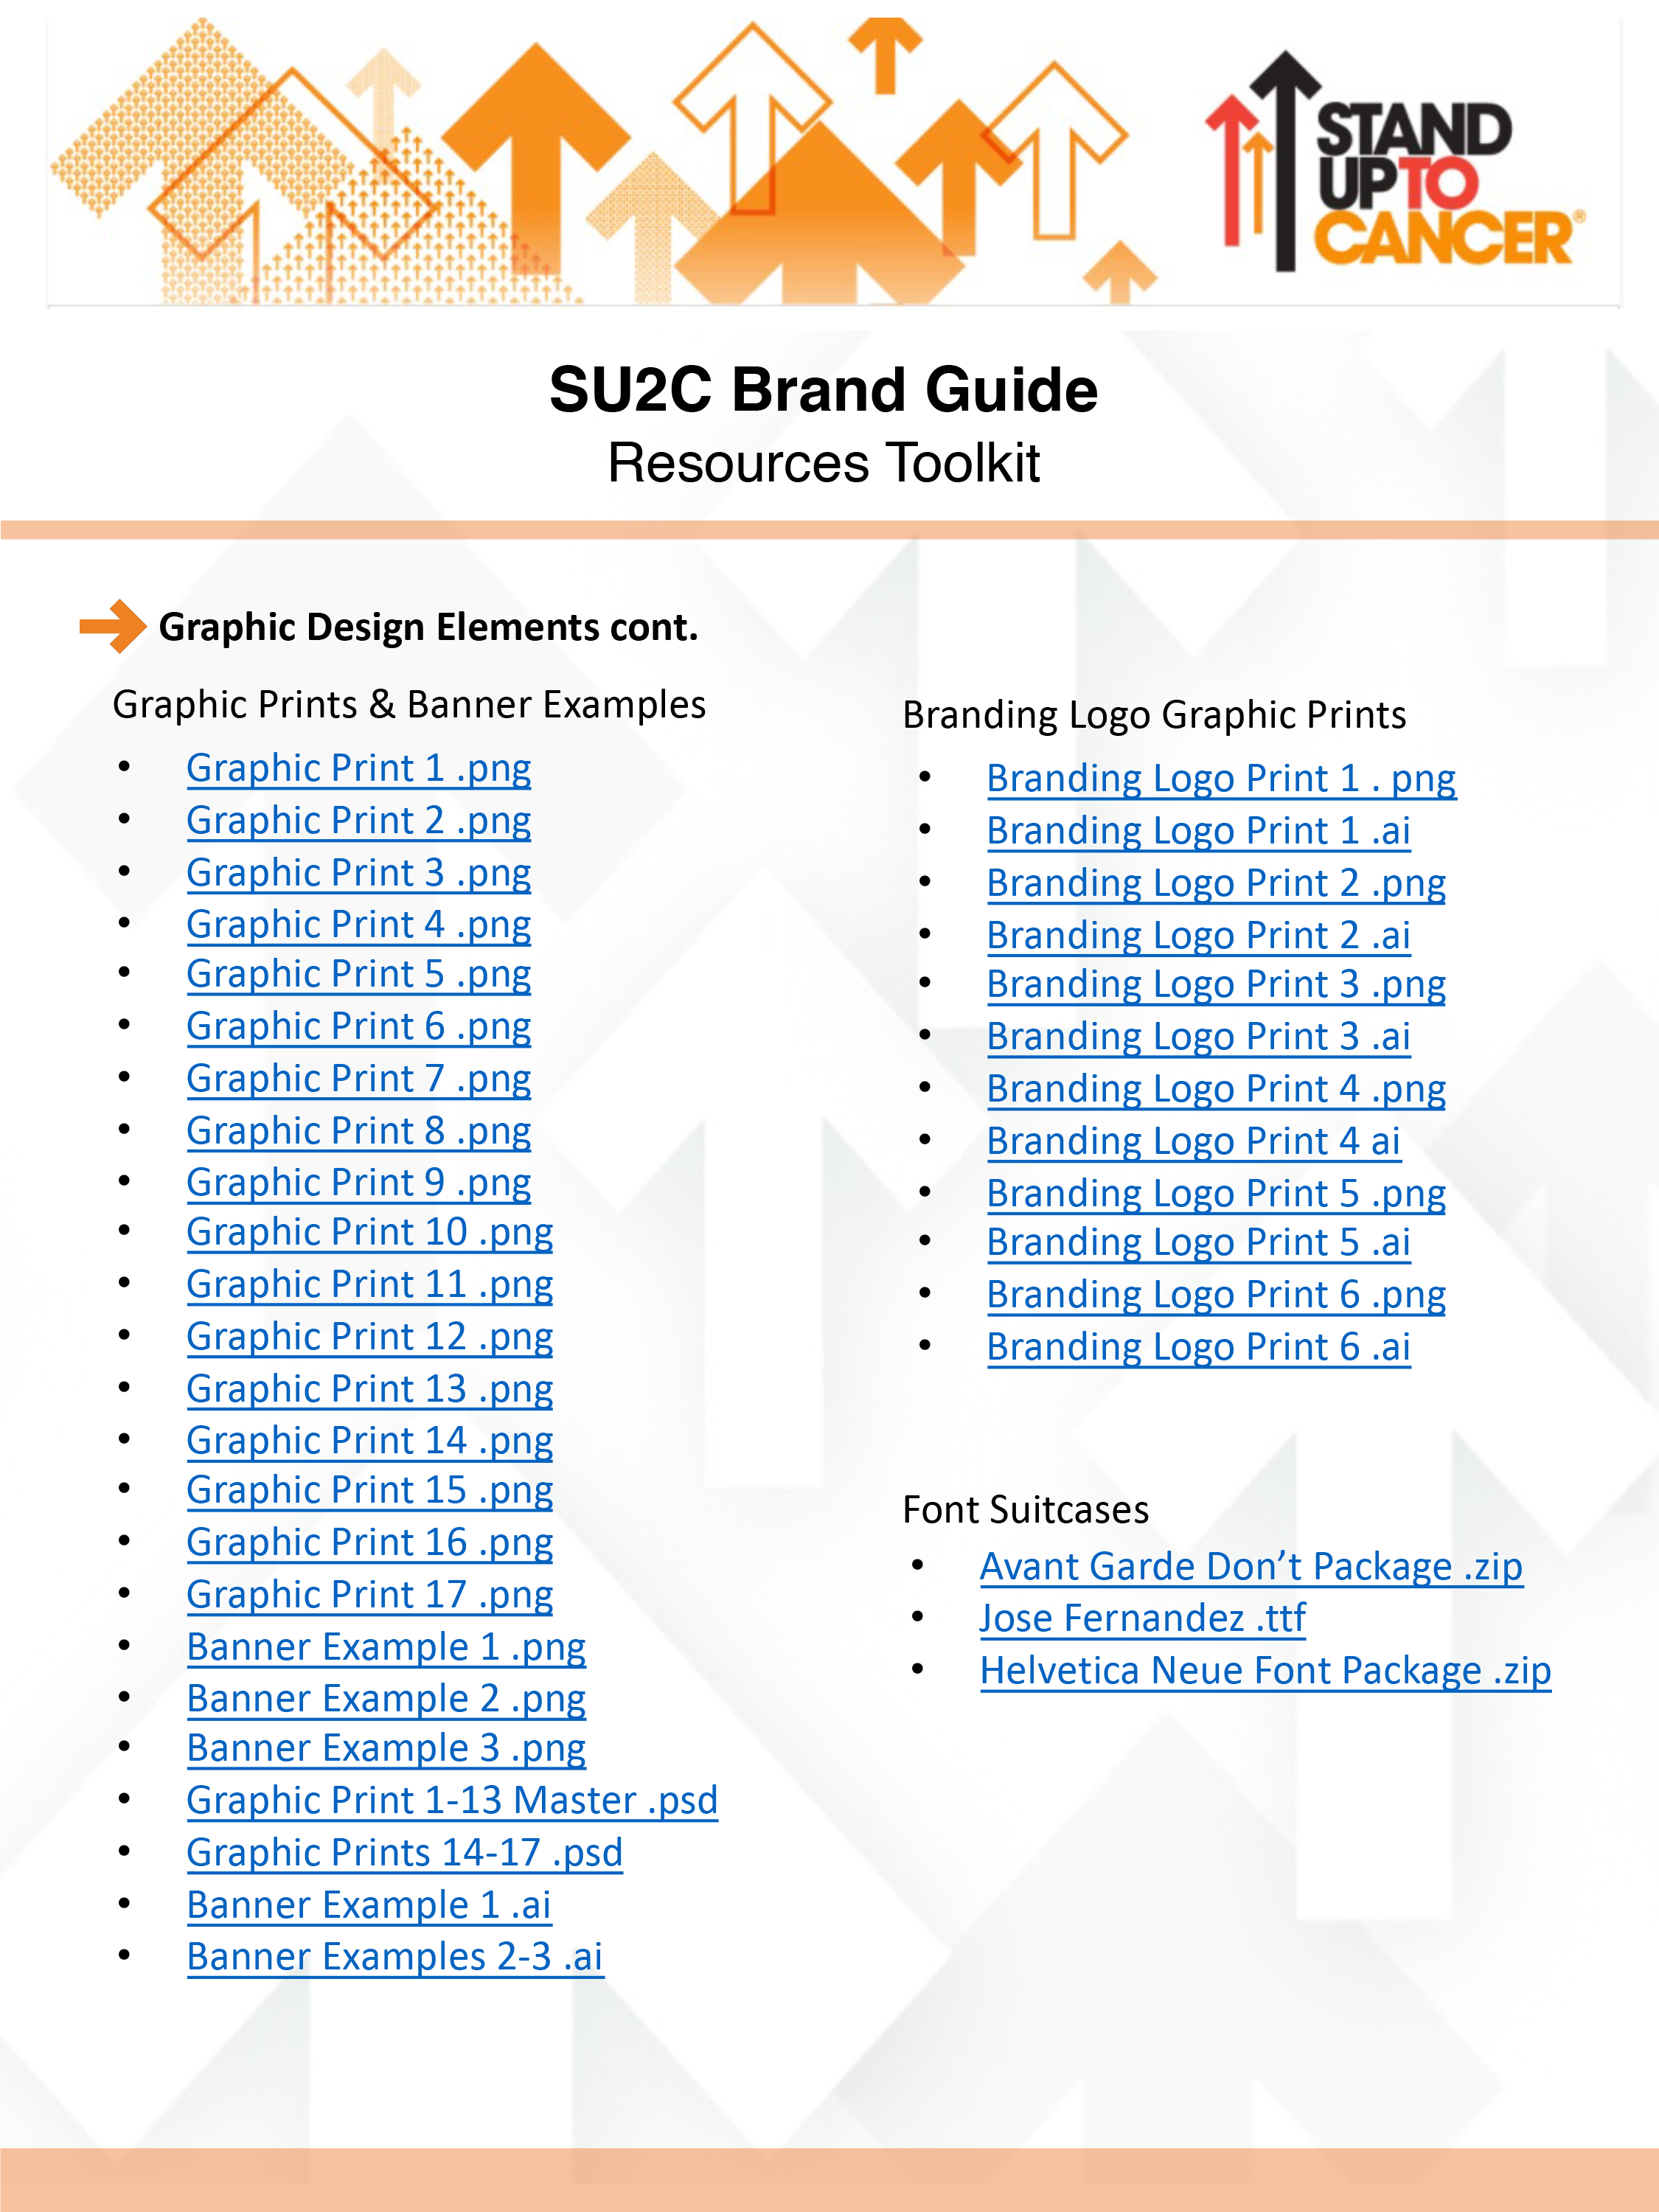 SU2C Style Guide